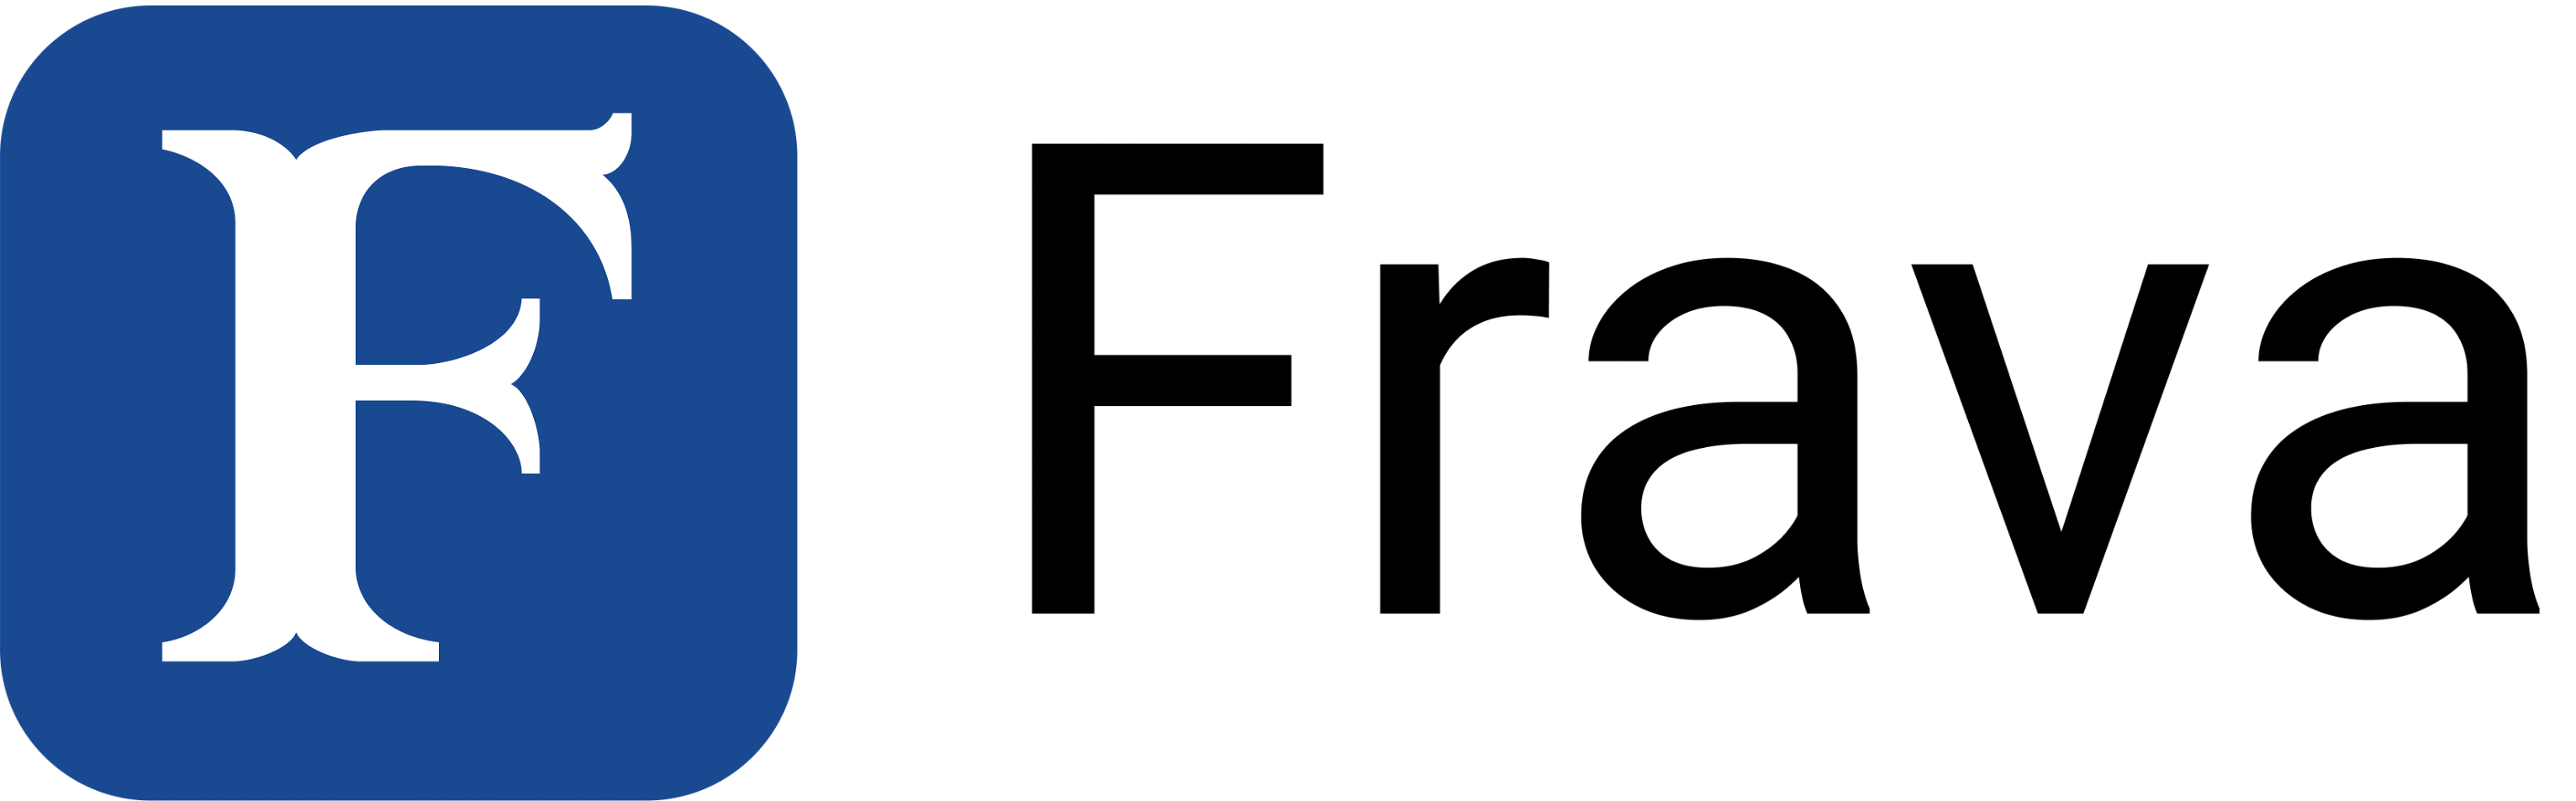 Frava's logo